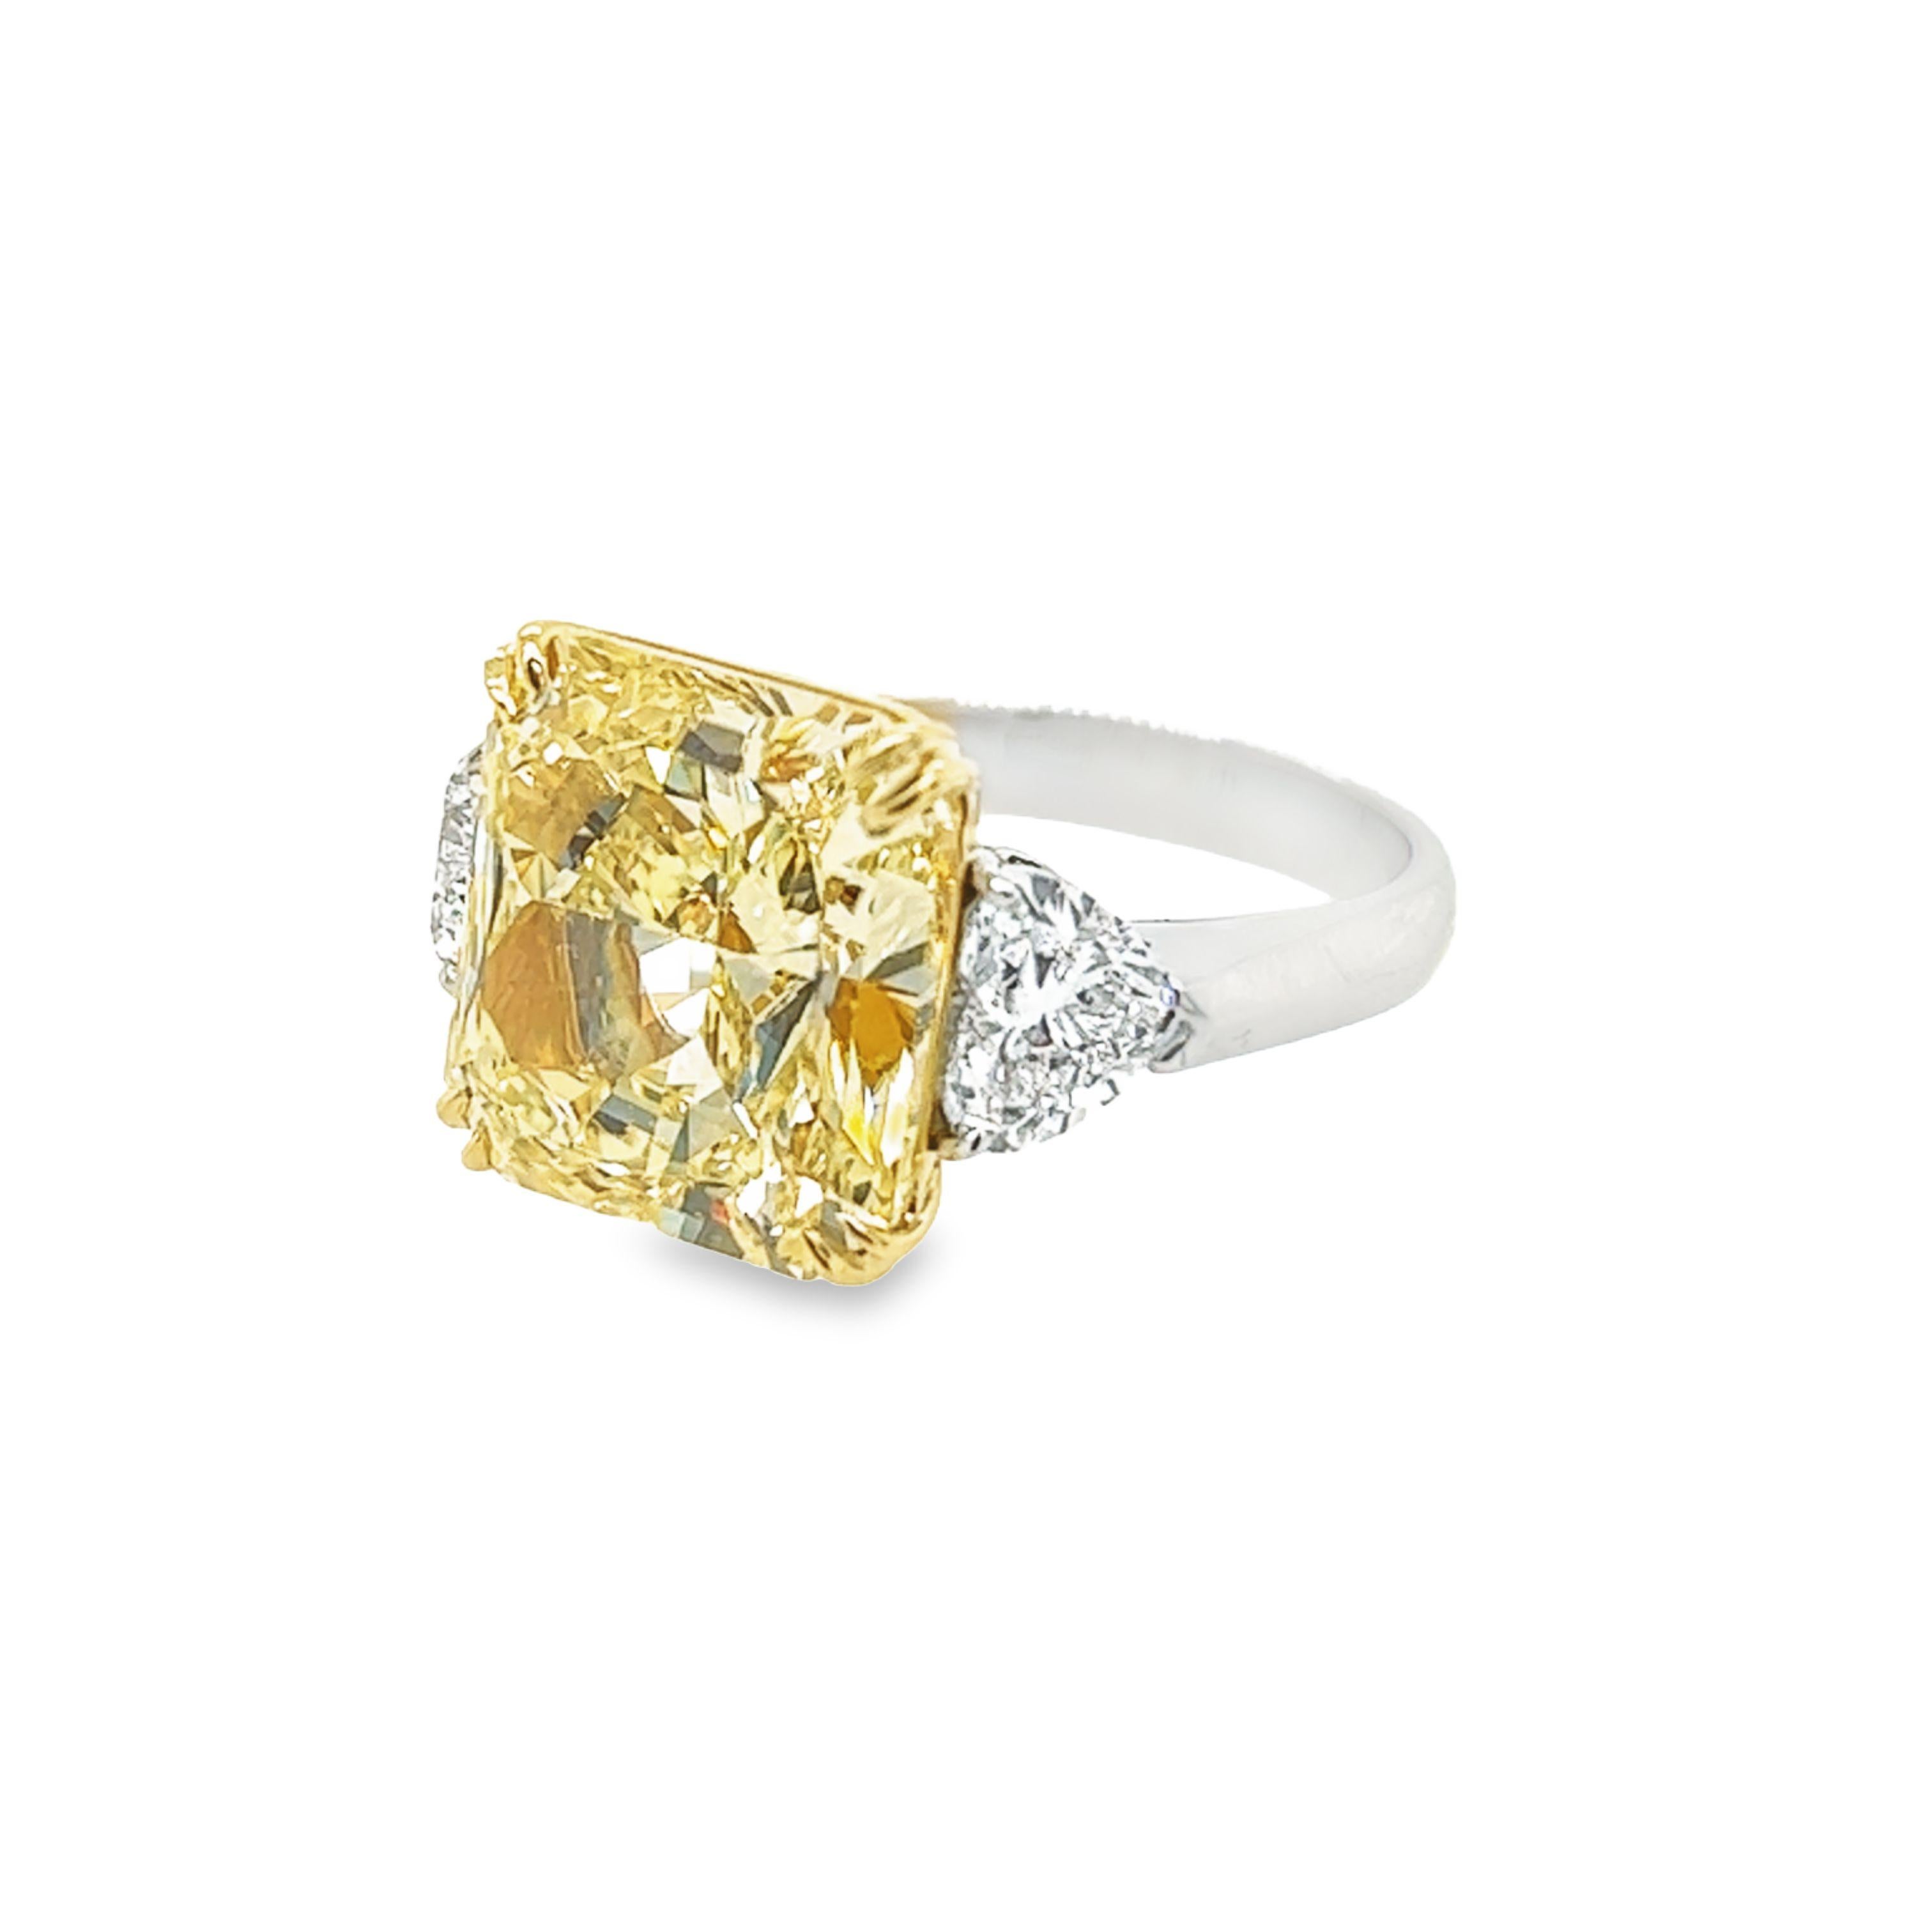 David Rosenberg 10.23 Radiant Fancy Yellow VVS1 GIA Diamond Engagement Ring For Sale 1